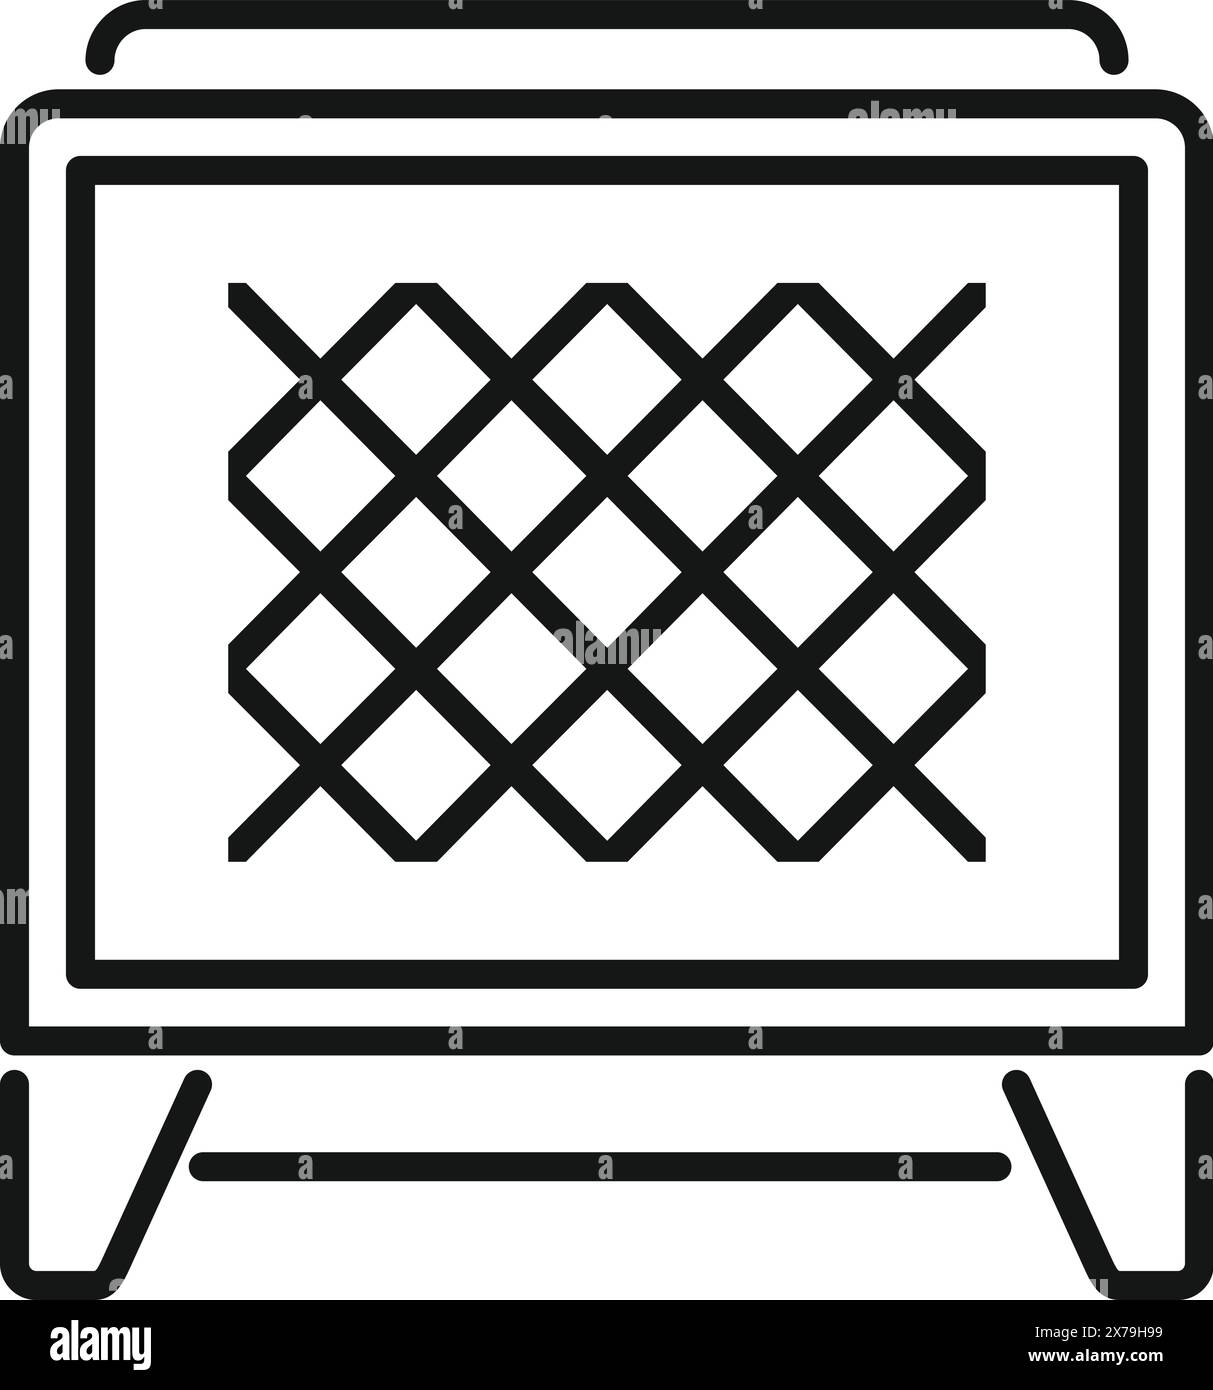 Illustrazione dell'icona del motivo in tessuto astratto in bianco e nero. Con grafica geometrica creativa texture simbolo ricamo grafico griglia a forma di diamante tessuto vettoriale artigianale. Perfetto per il moderno Illustrazione Vettoriale